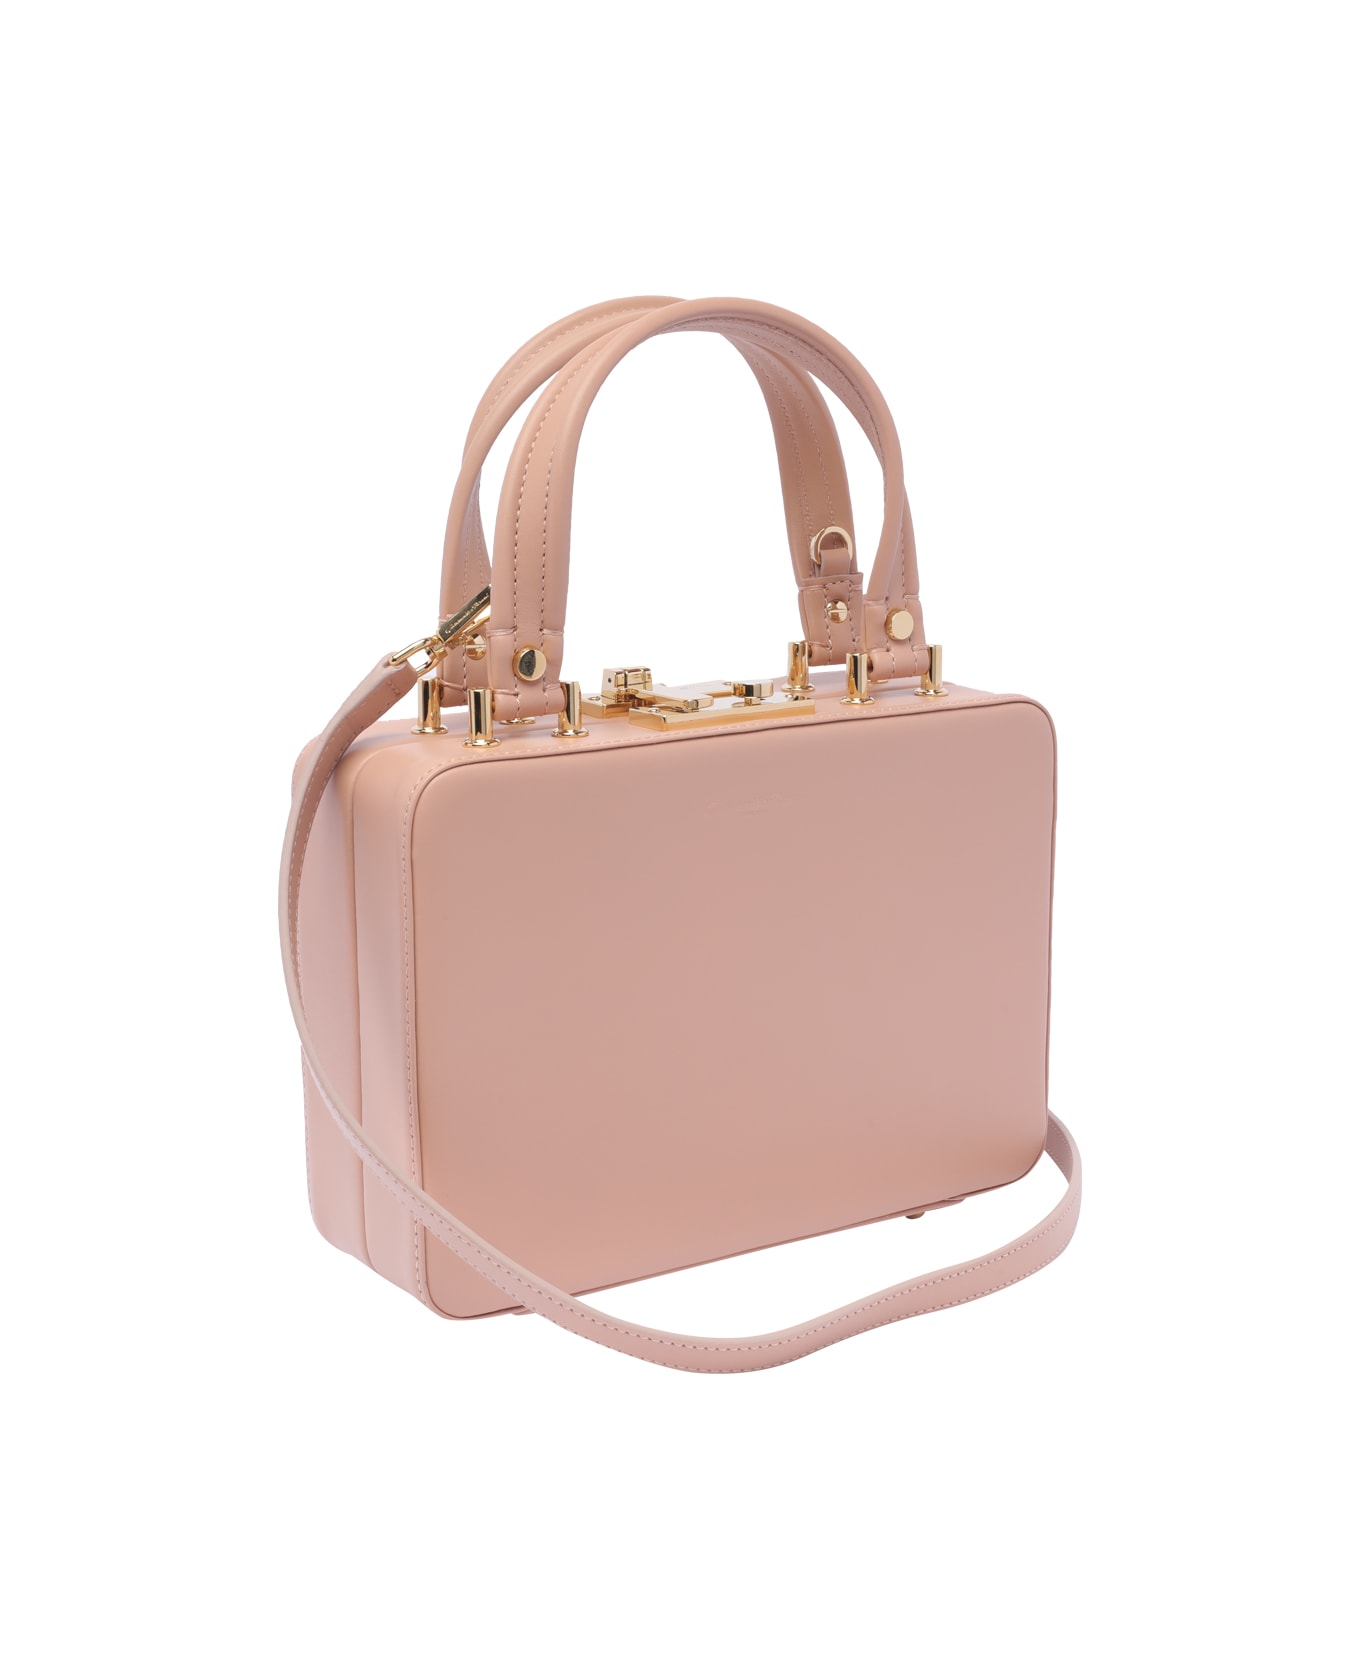 Gianvito Rossi Vali' Handbag - Pink トートバッグ